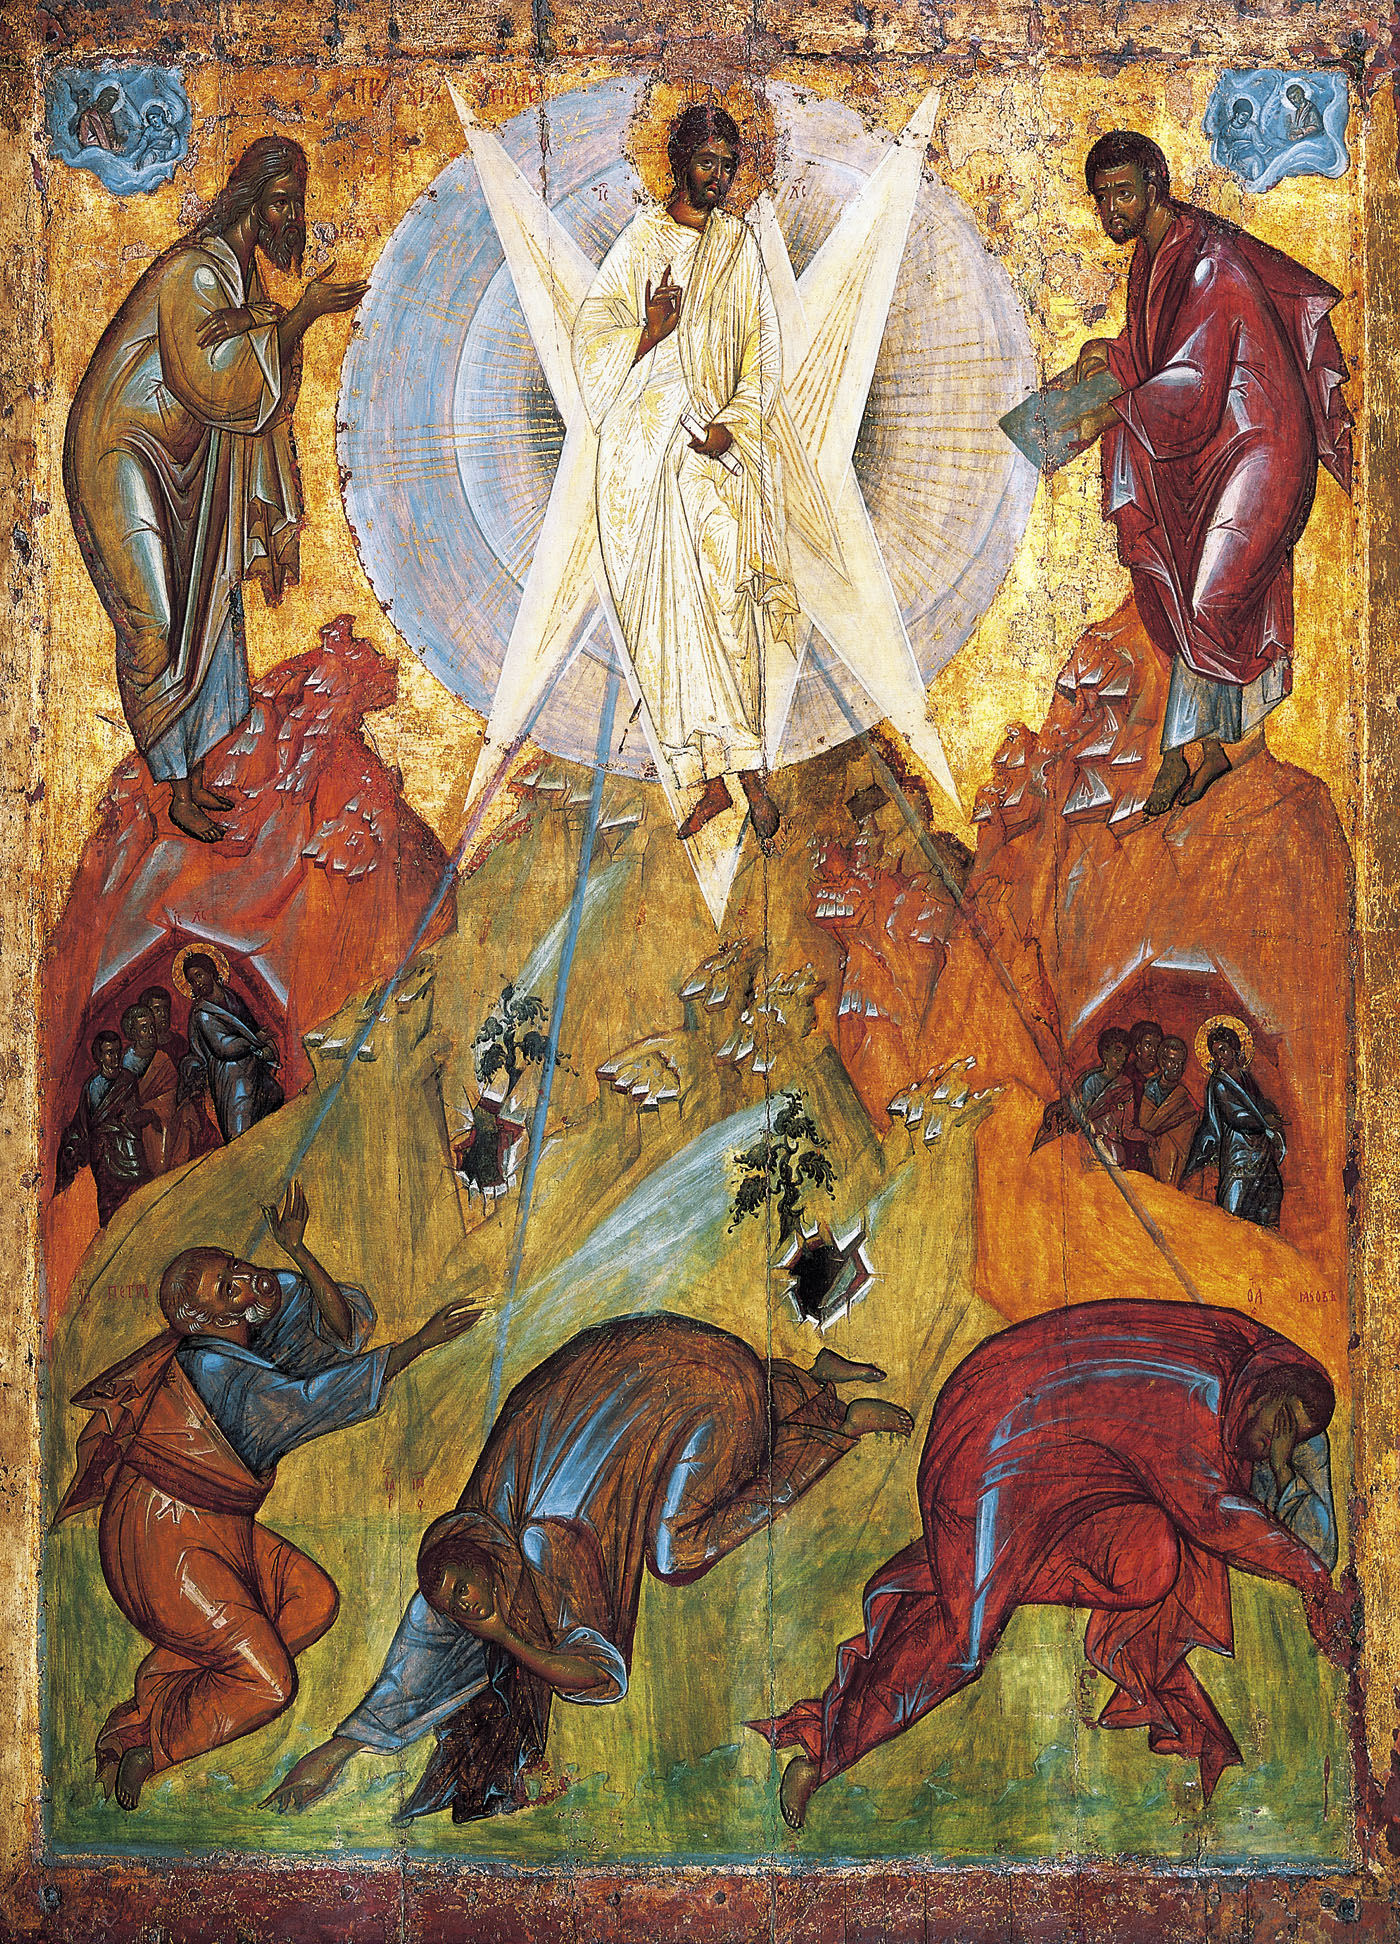 La transfiguración del salvador